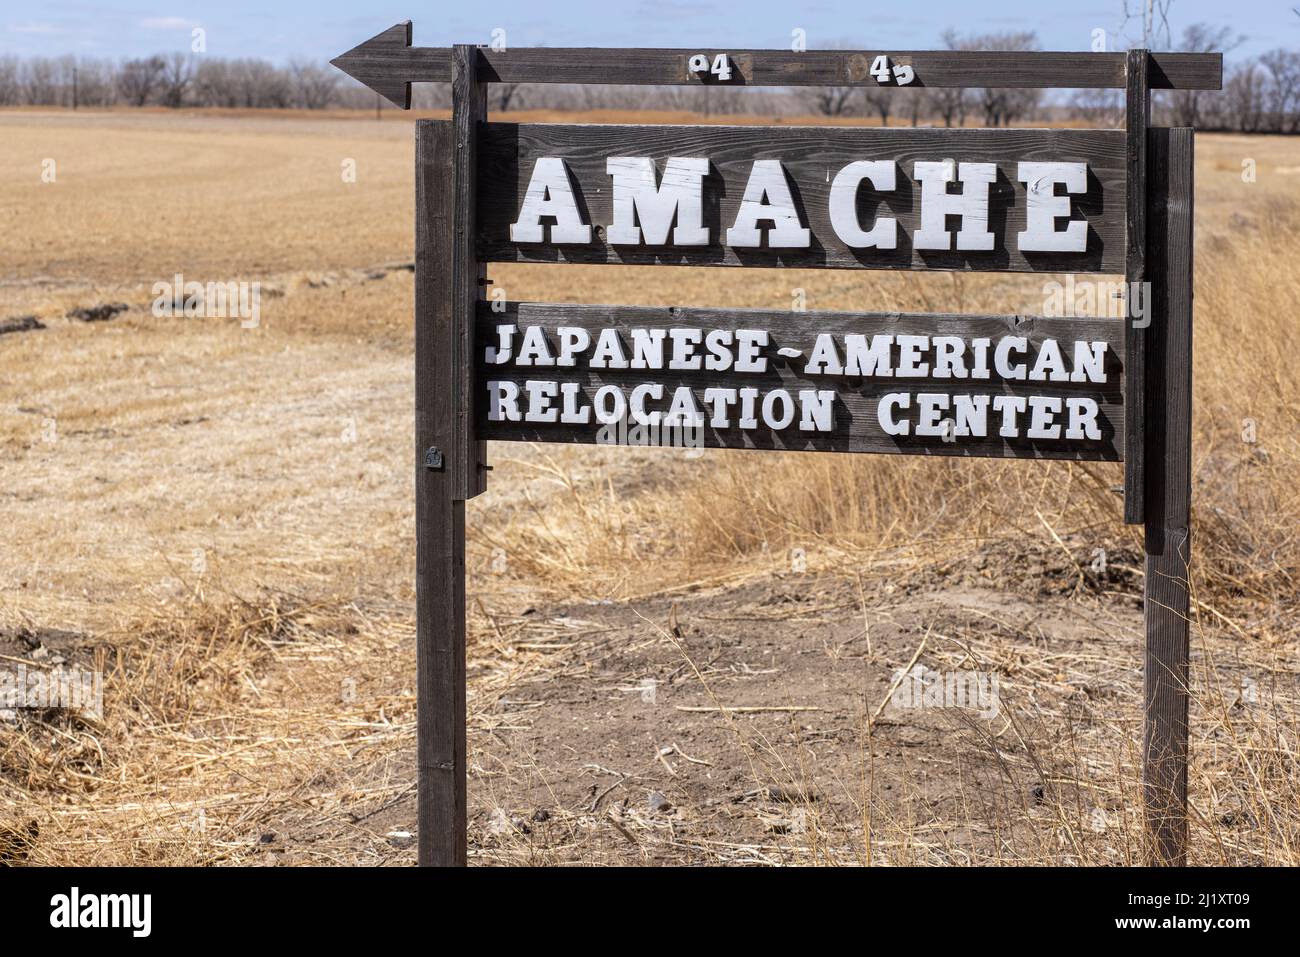 Il Granada War Relocation Center, noto agli internati come Camp Amache, era un campo di concentramento giapponese americano situato nel sud-est del Colorado Foto Stock